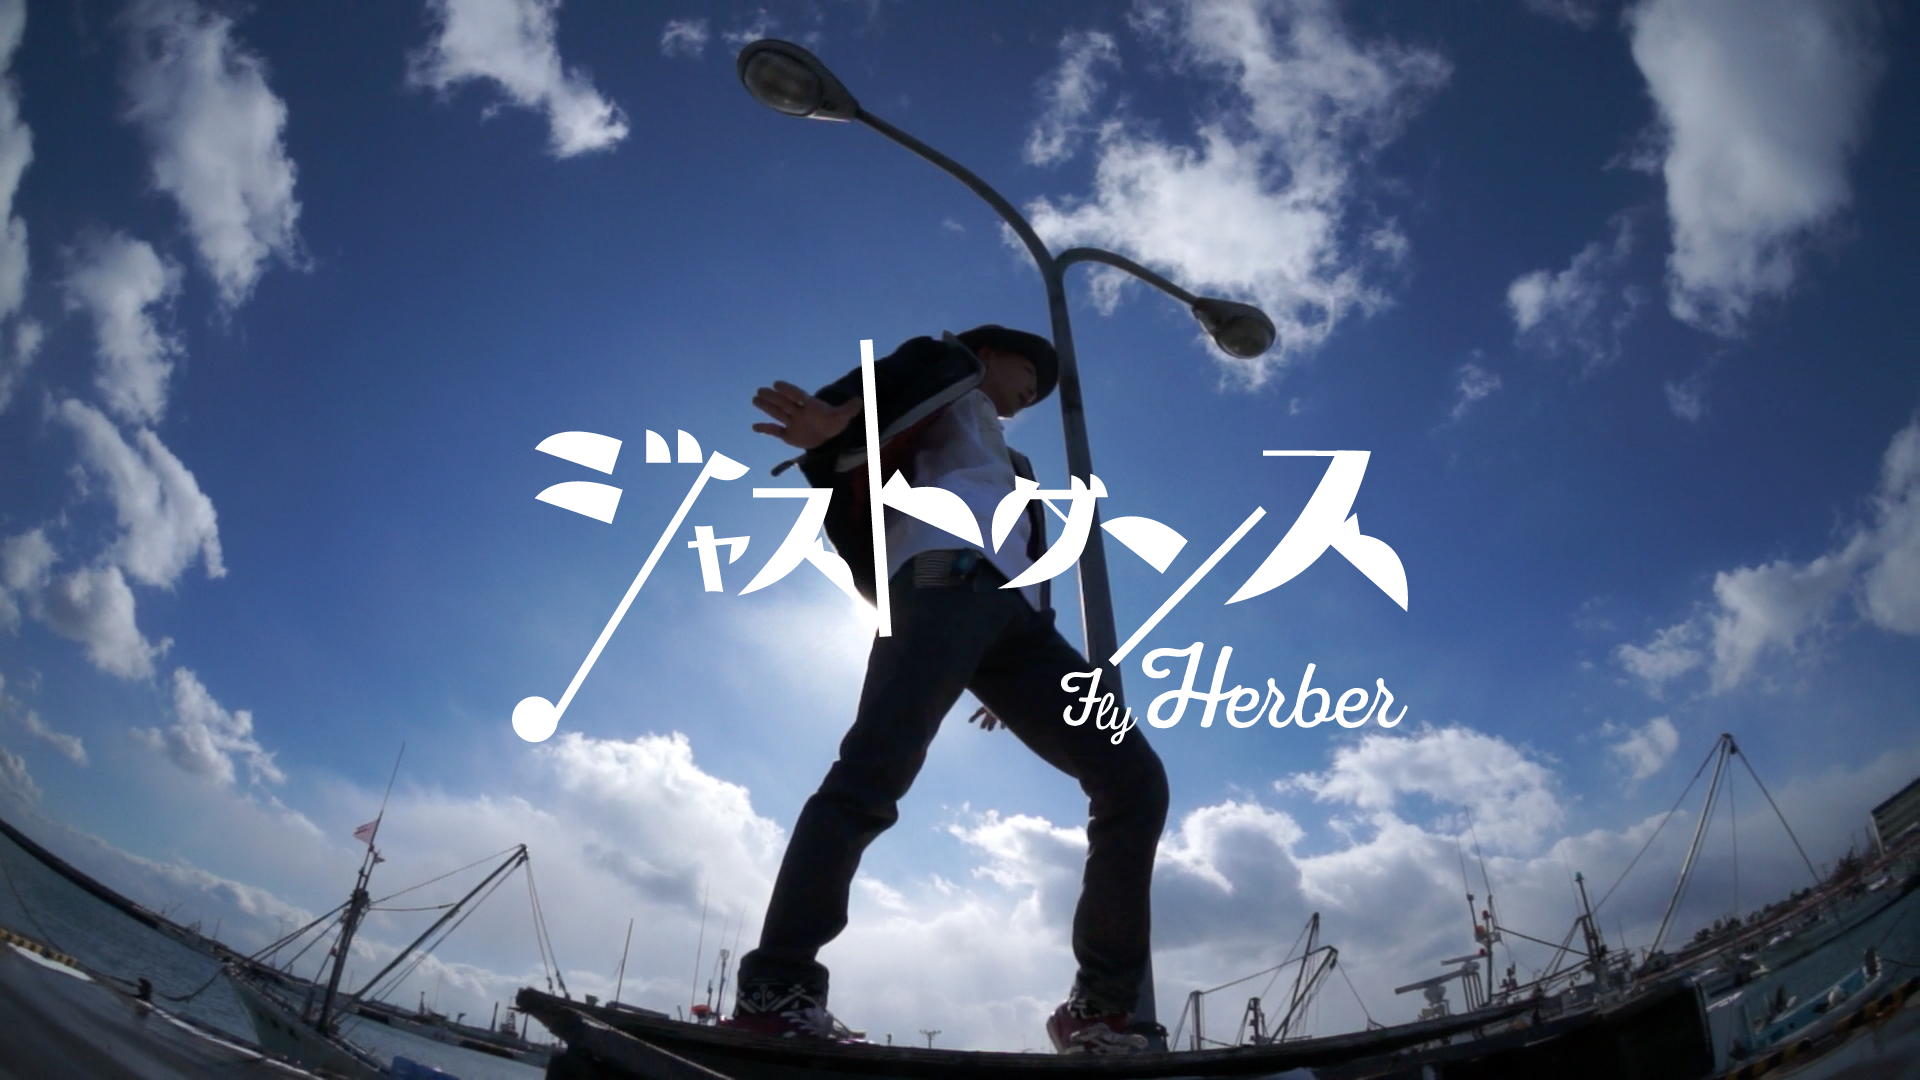 ジャストダンス -Fly Herber-【WING】